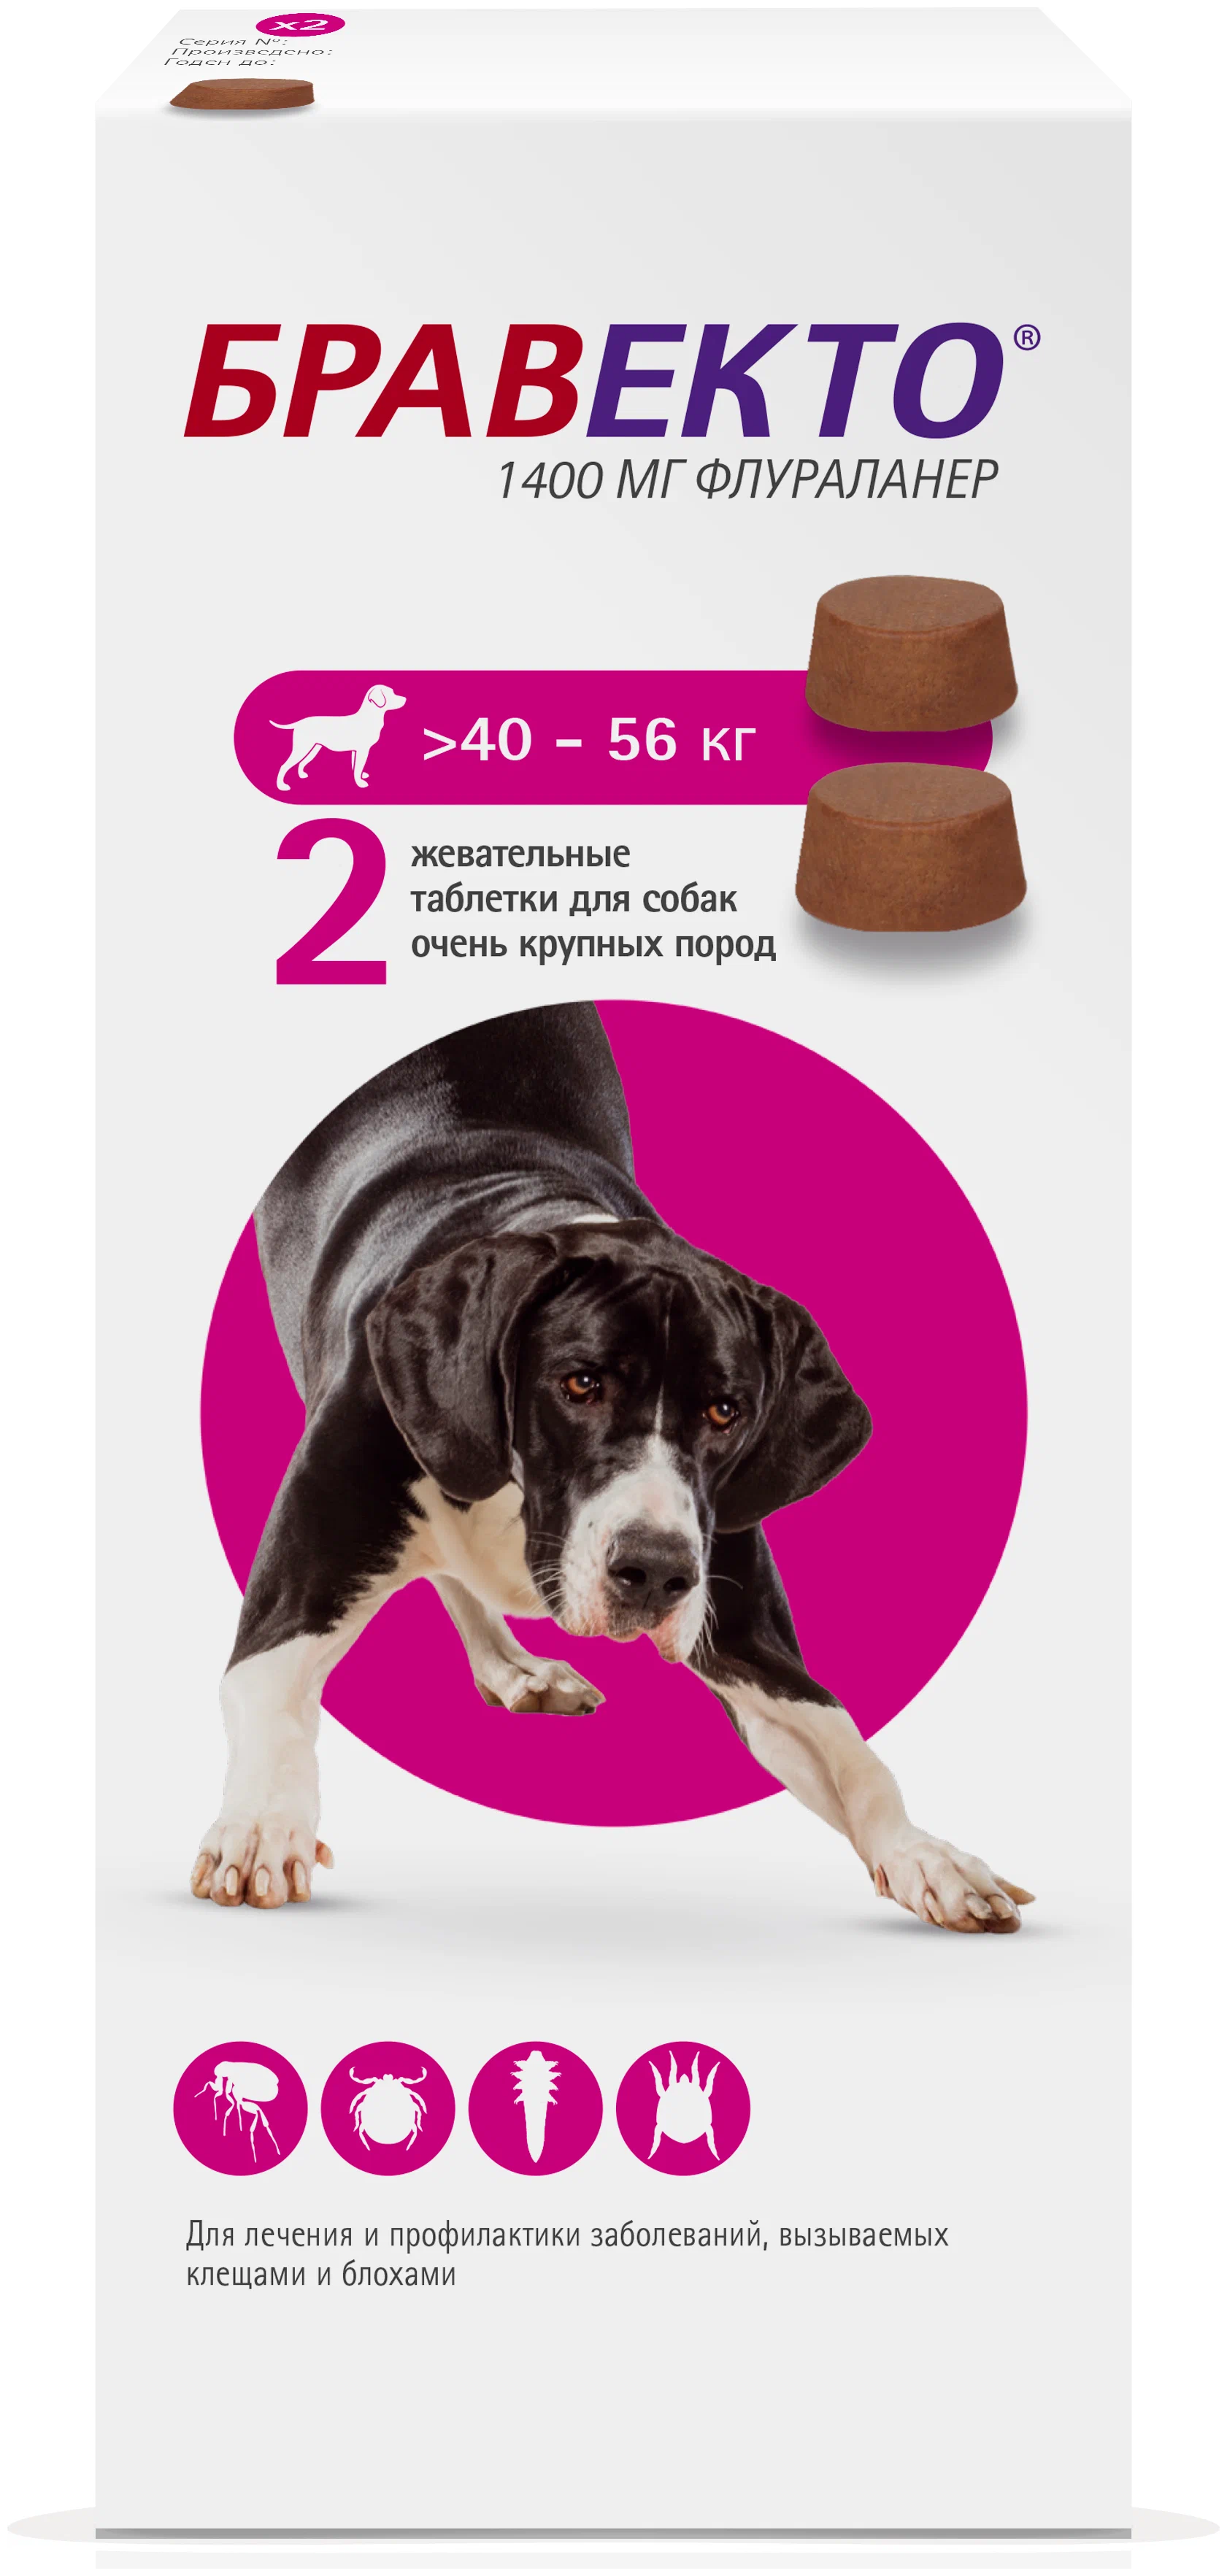 Бравекто 1400мг таблетка инсектоакарицидная д/собак 40-56кг. Бравекто таблетки для собак 40-56. Бравекто 1400 мг д/собак 40-56 кг. Бравекто для собак 40-56 2. Бравекто для собак купить в калининграде